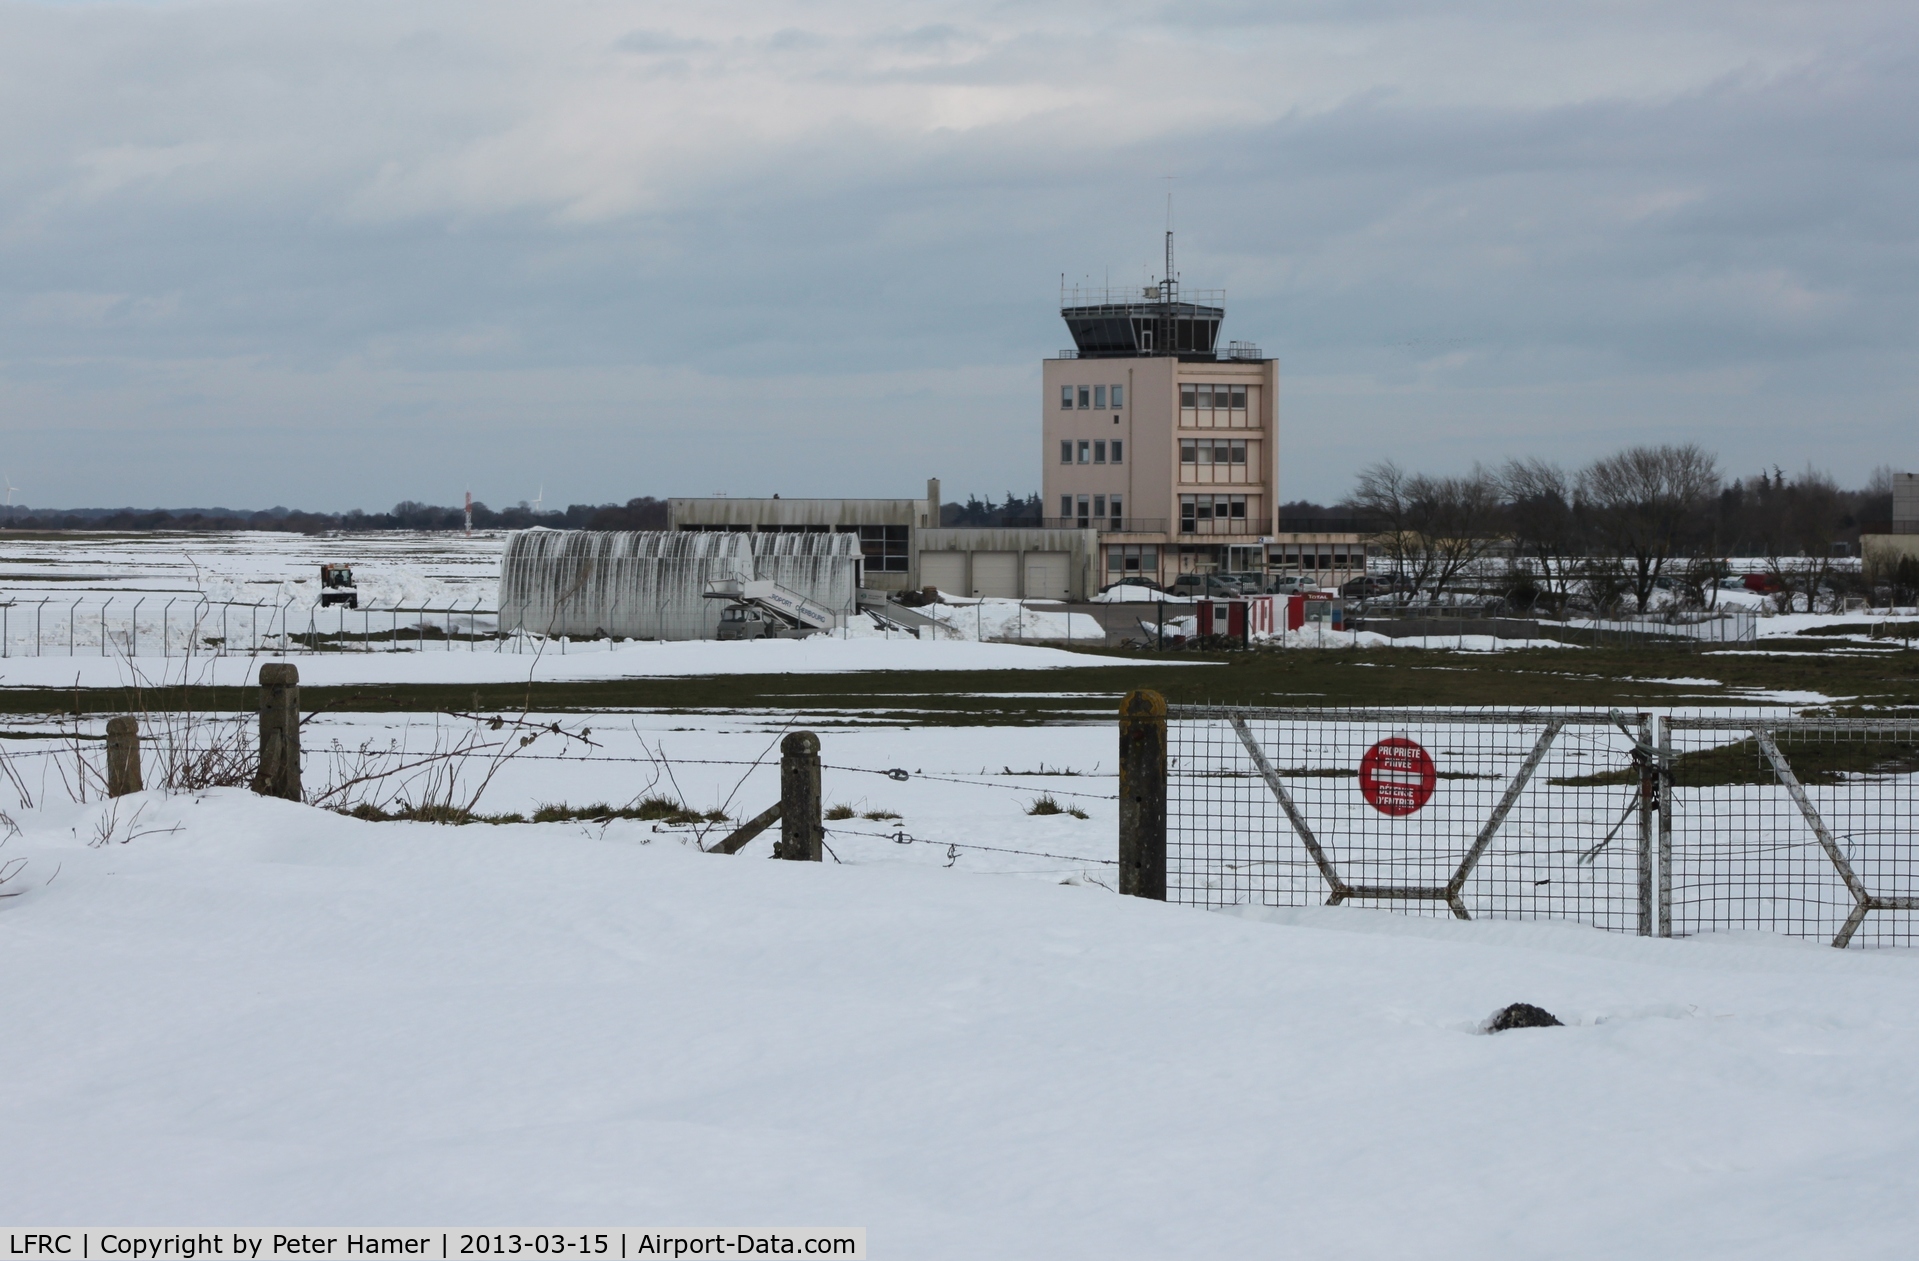 Cherbourg Maupertus Airport, Cherbourg France (LFRC) - Sous la neige, Mars 2013